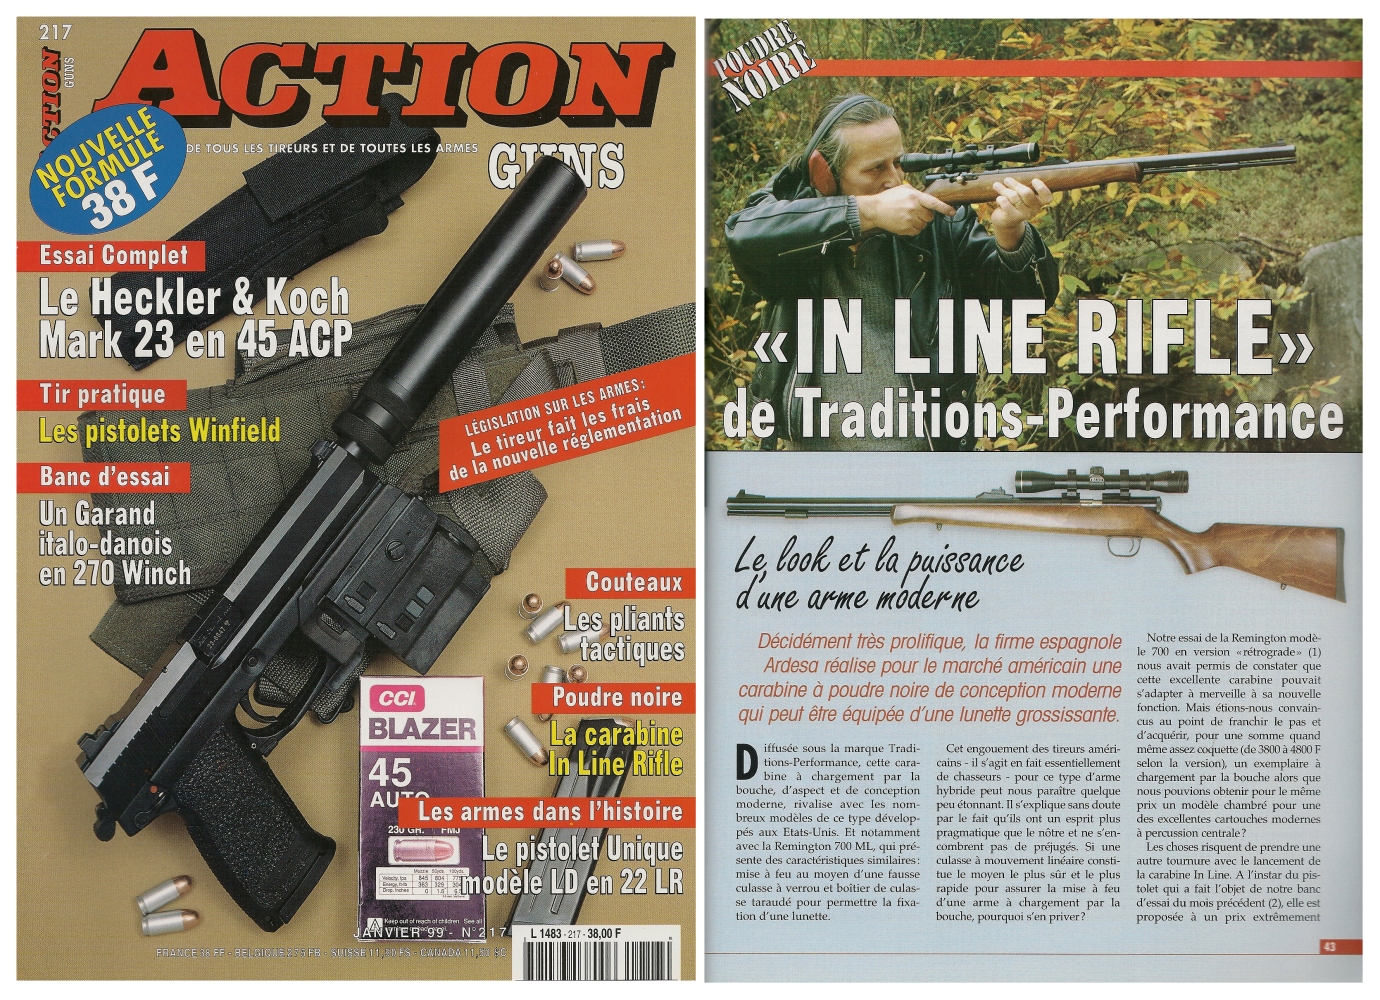 Le banc d'essai de la carabine Ardesa « In Line » a été publié sur 5 pages dans le magazine Action Guns n° 217 (janvier 1999).